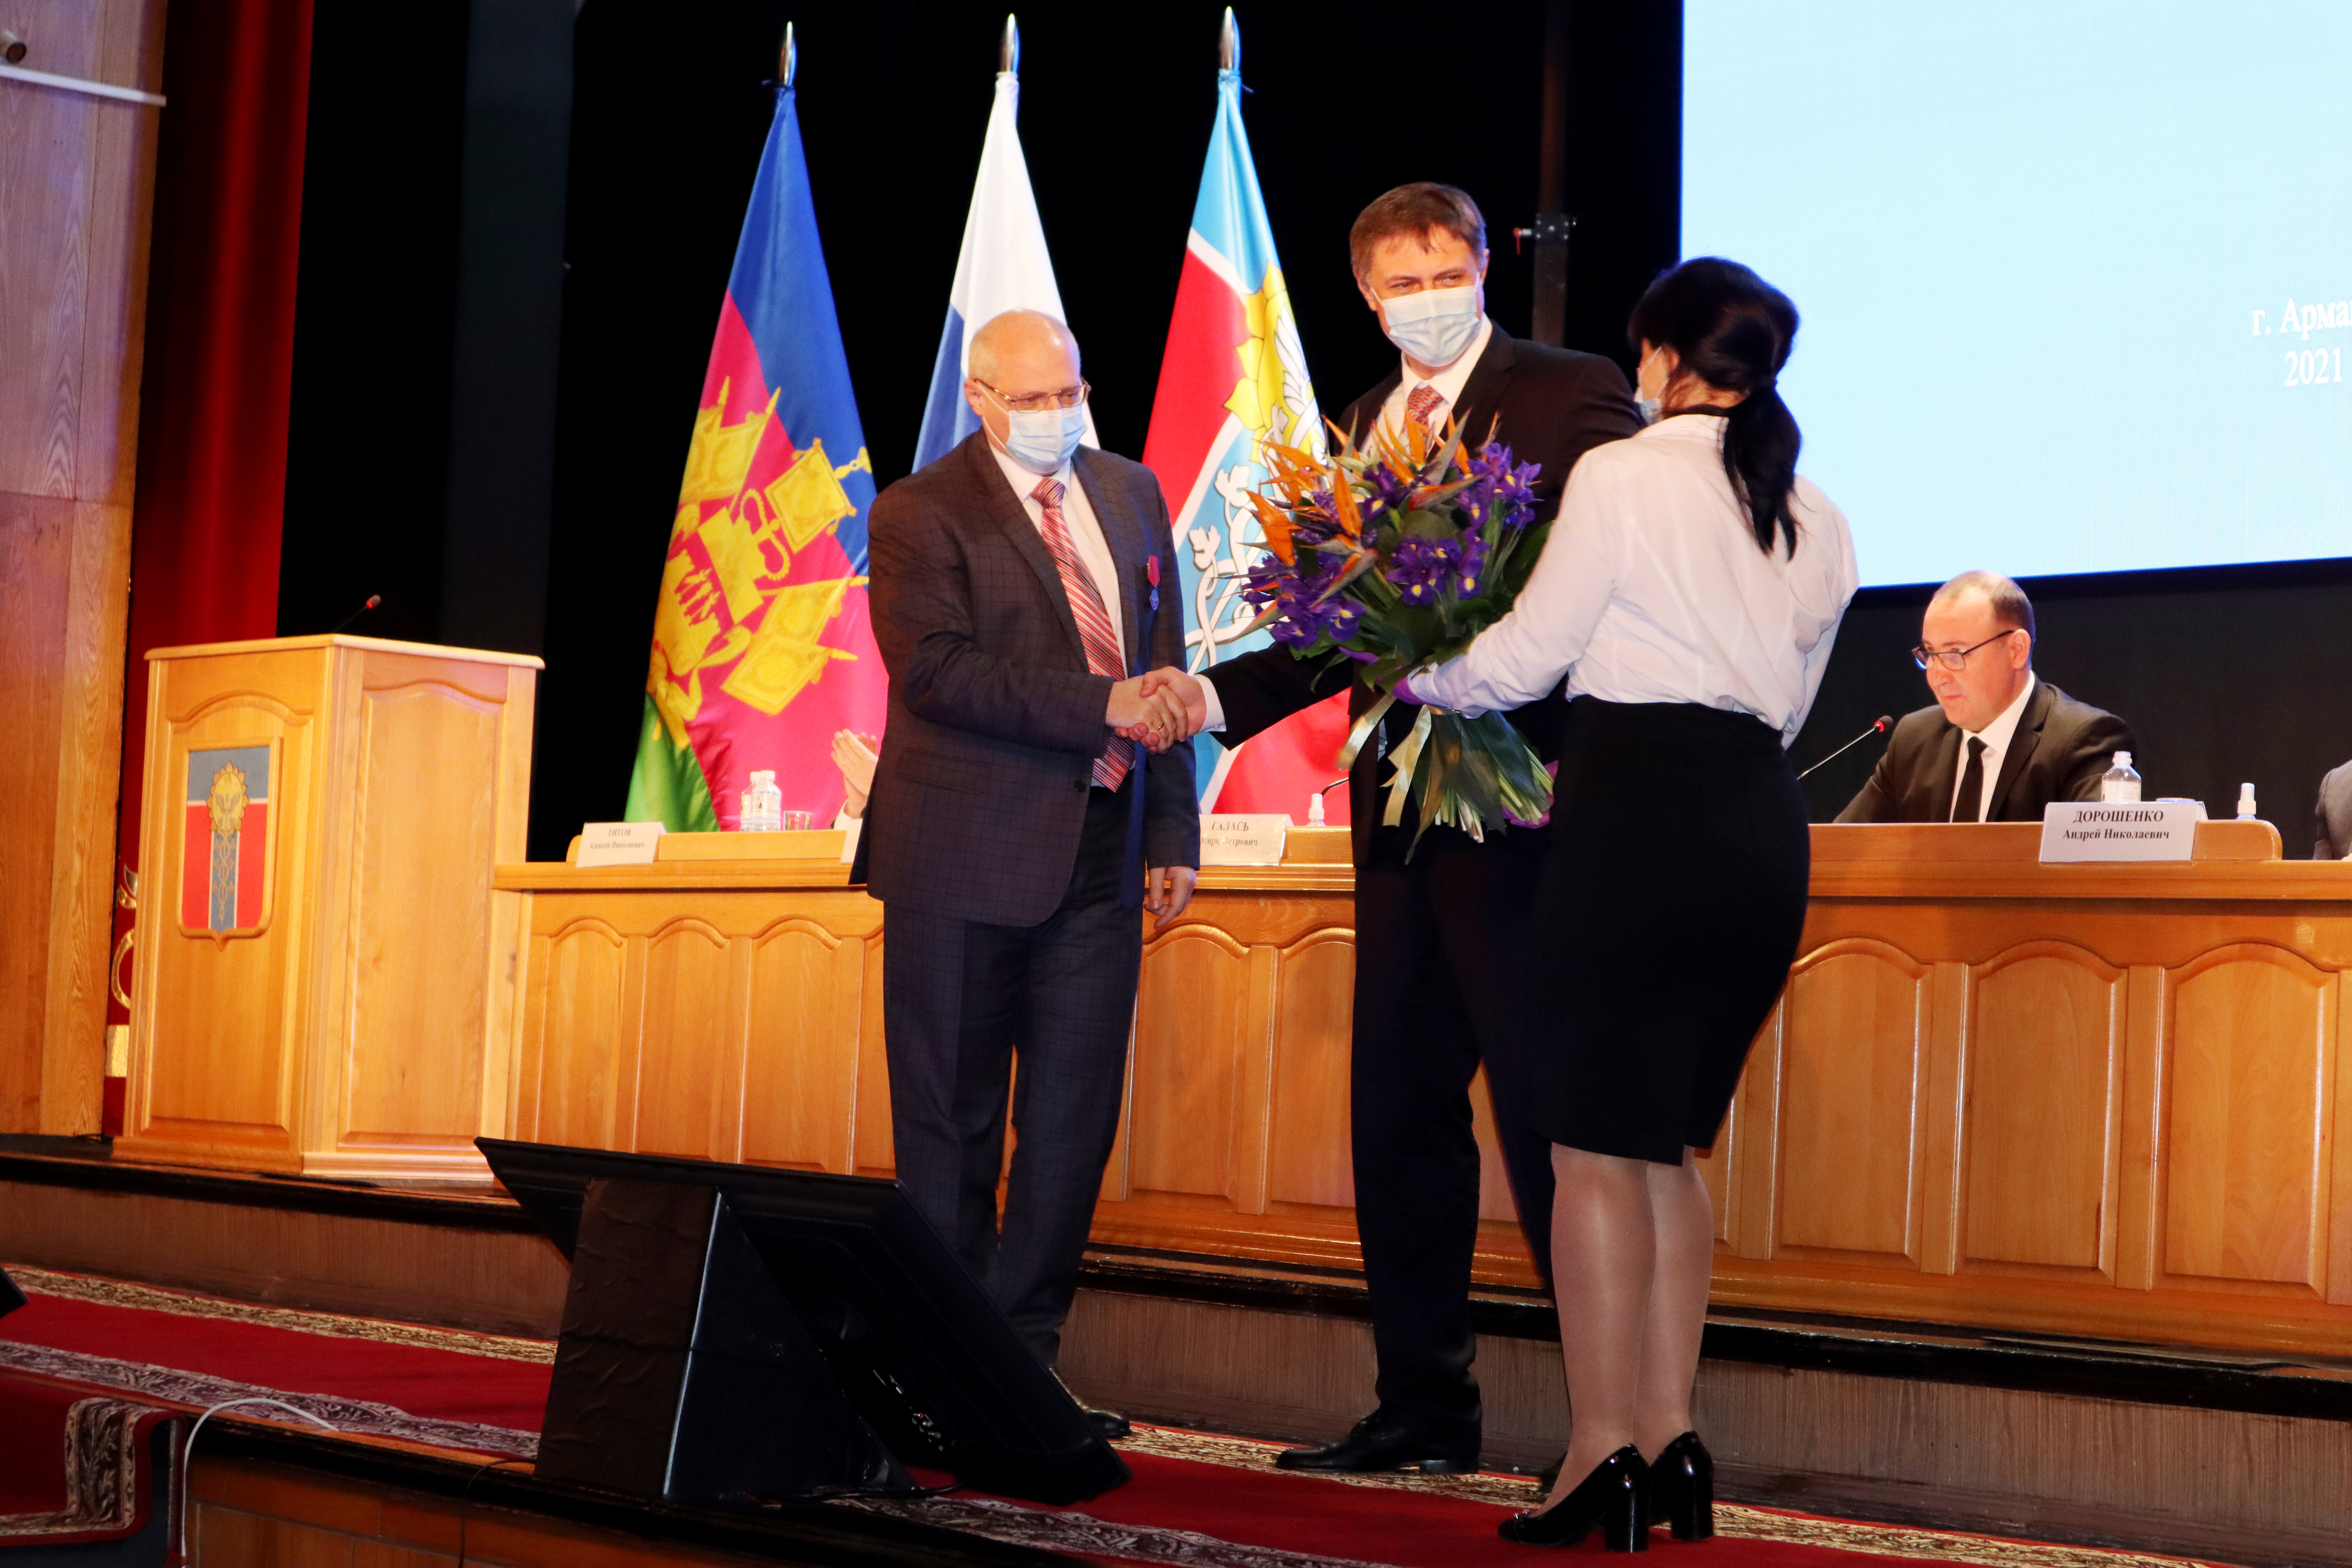 Мэра Армавира наградили медалью  «За заслуги перед Отечеством» II степени